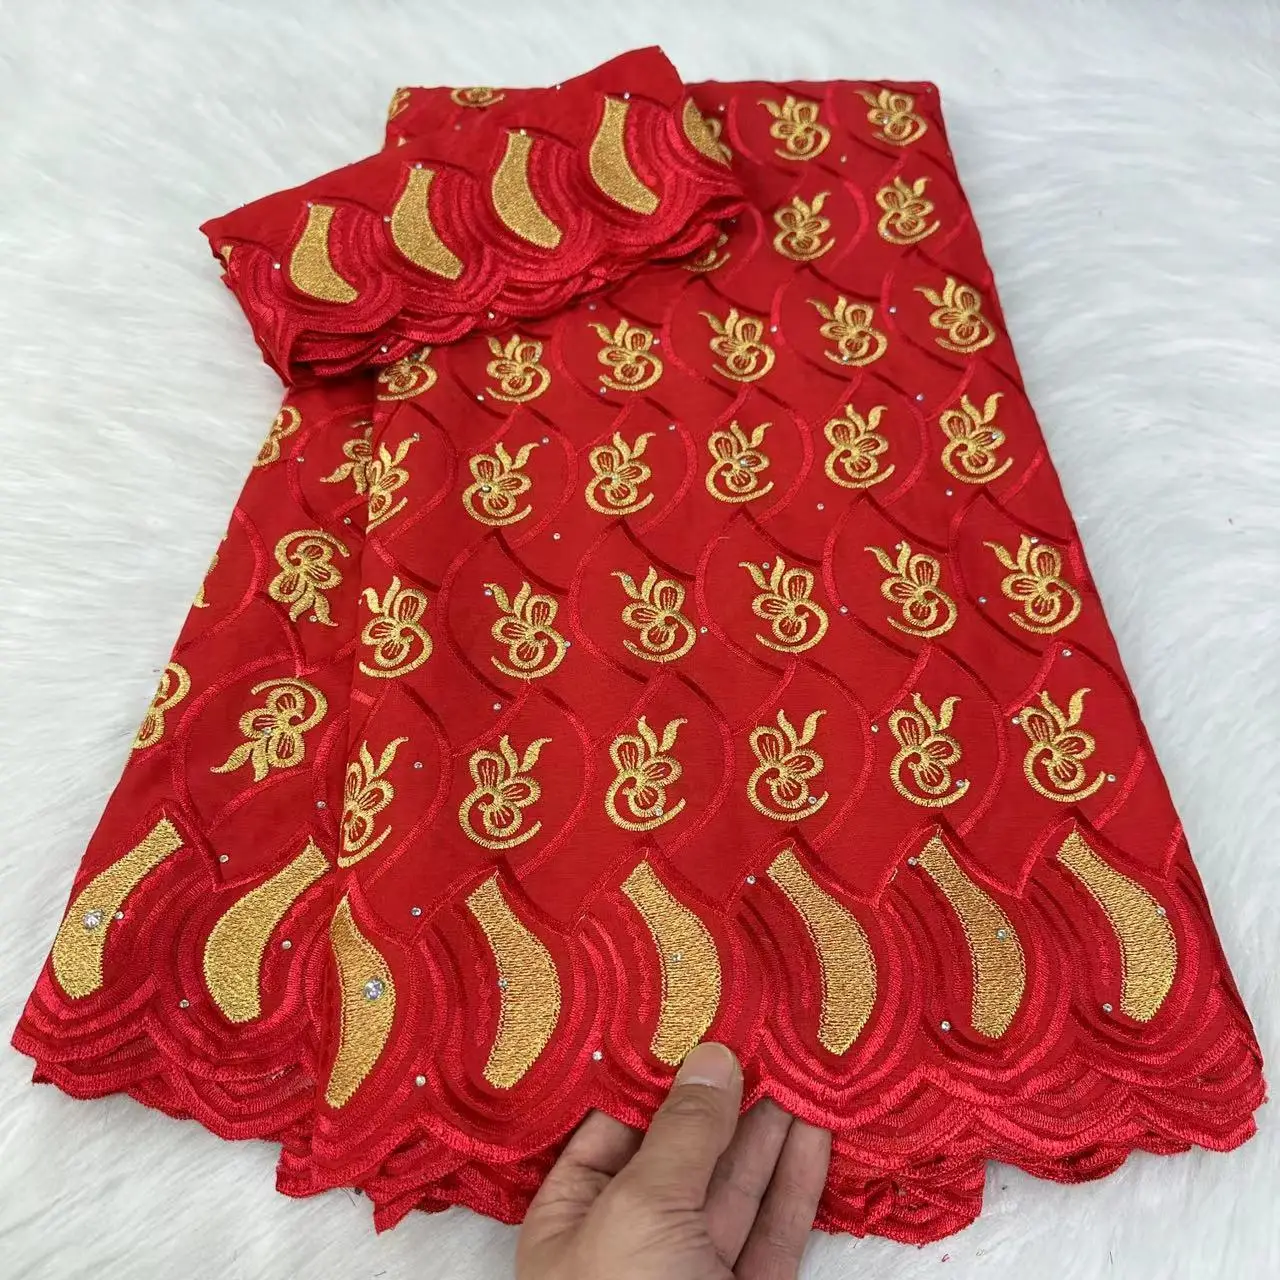 

Красная нигерийская 100% хлопковая вышитая ткань Африканское традиционное свадебное платье швейцарская Кружевная Ткань 5 ярдов ткань с 2 ярдами шарфа